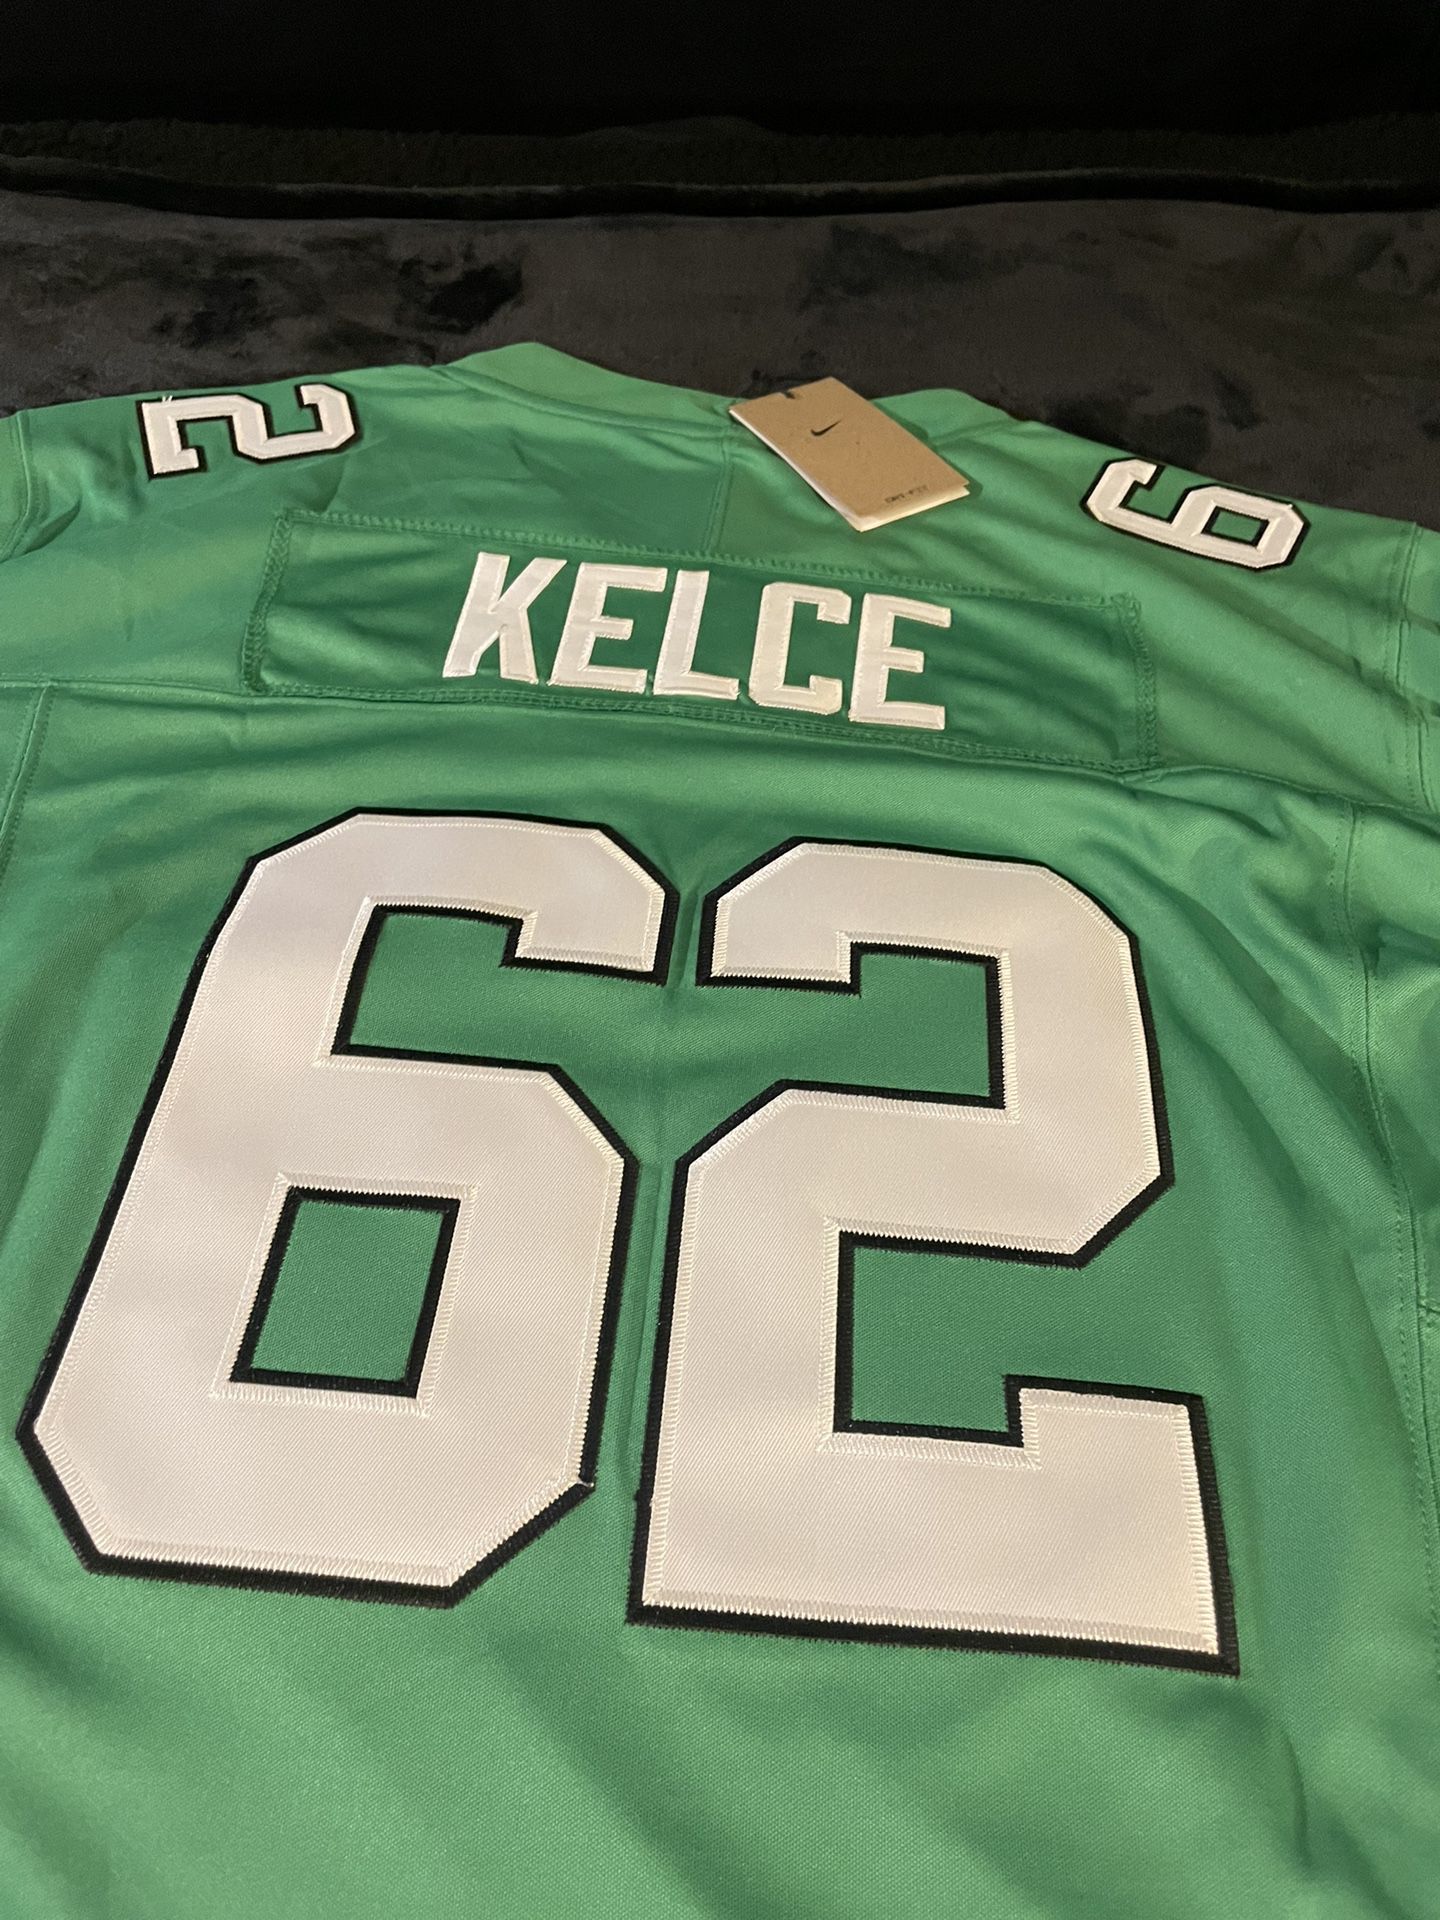 Philadelphia Eagles Jason Kelce - KELLY GREEN Jersey Men’s Large